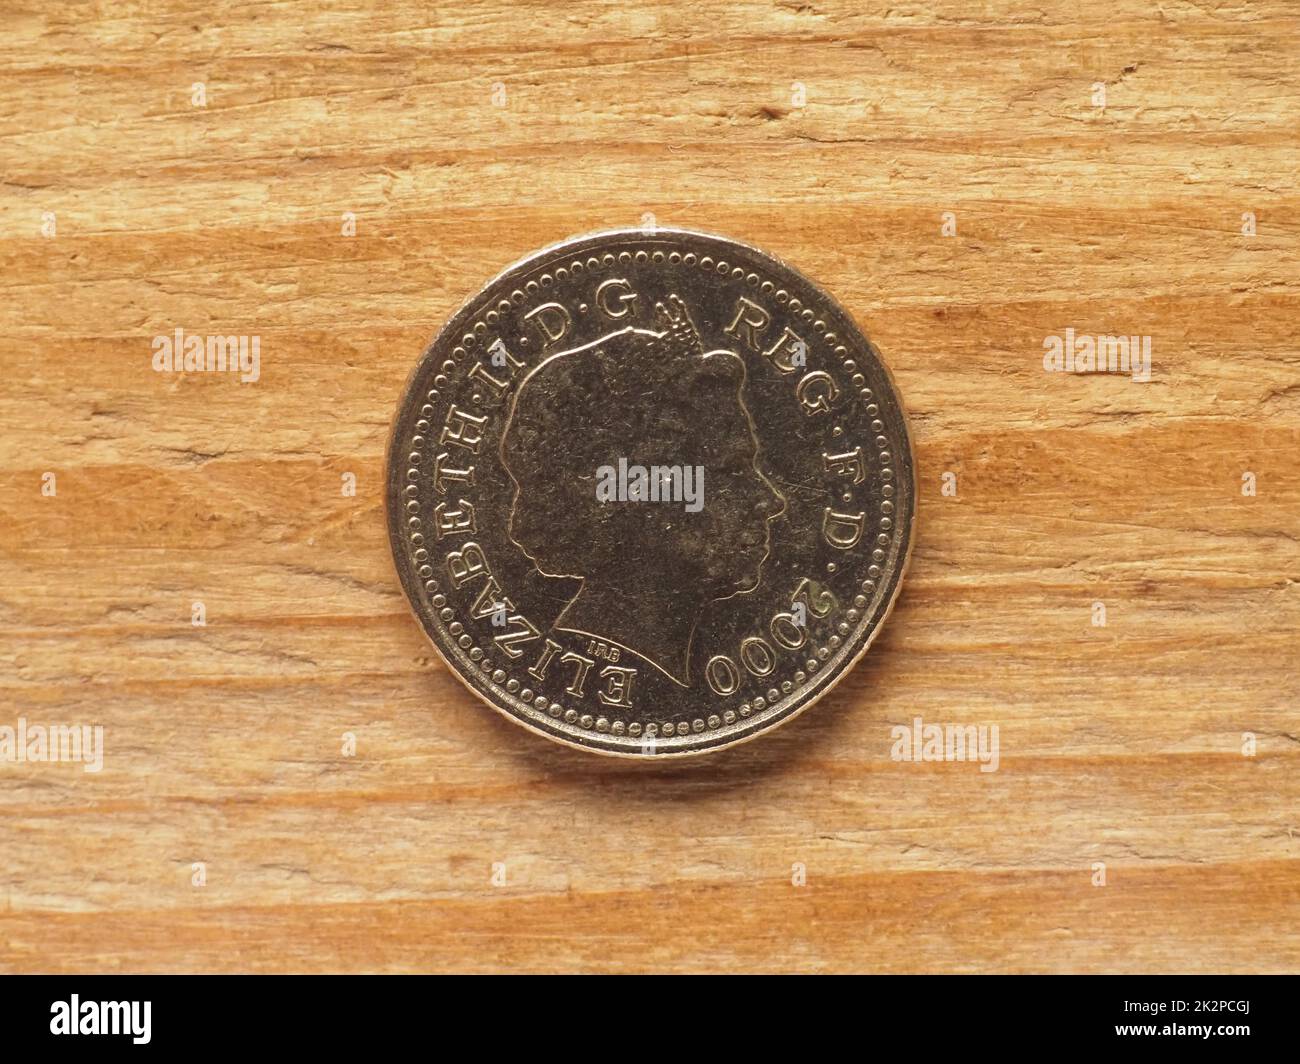 5 pence coin, côté opposé montrant la Reine, monnaie du Royaume-Uni Banque D'Images